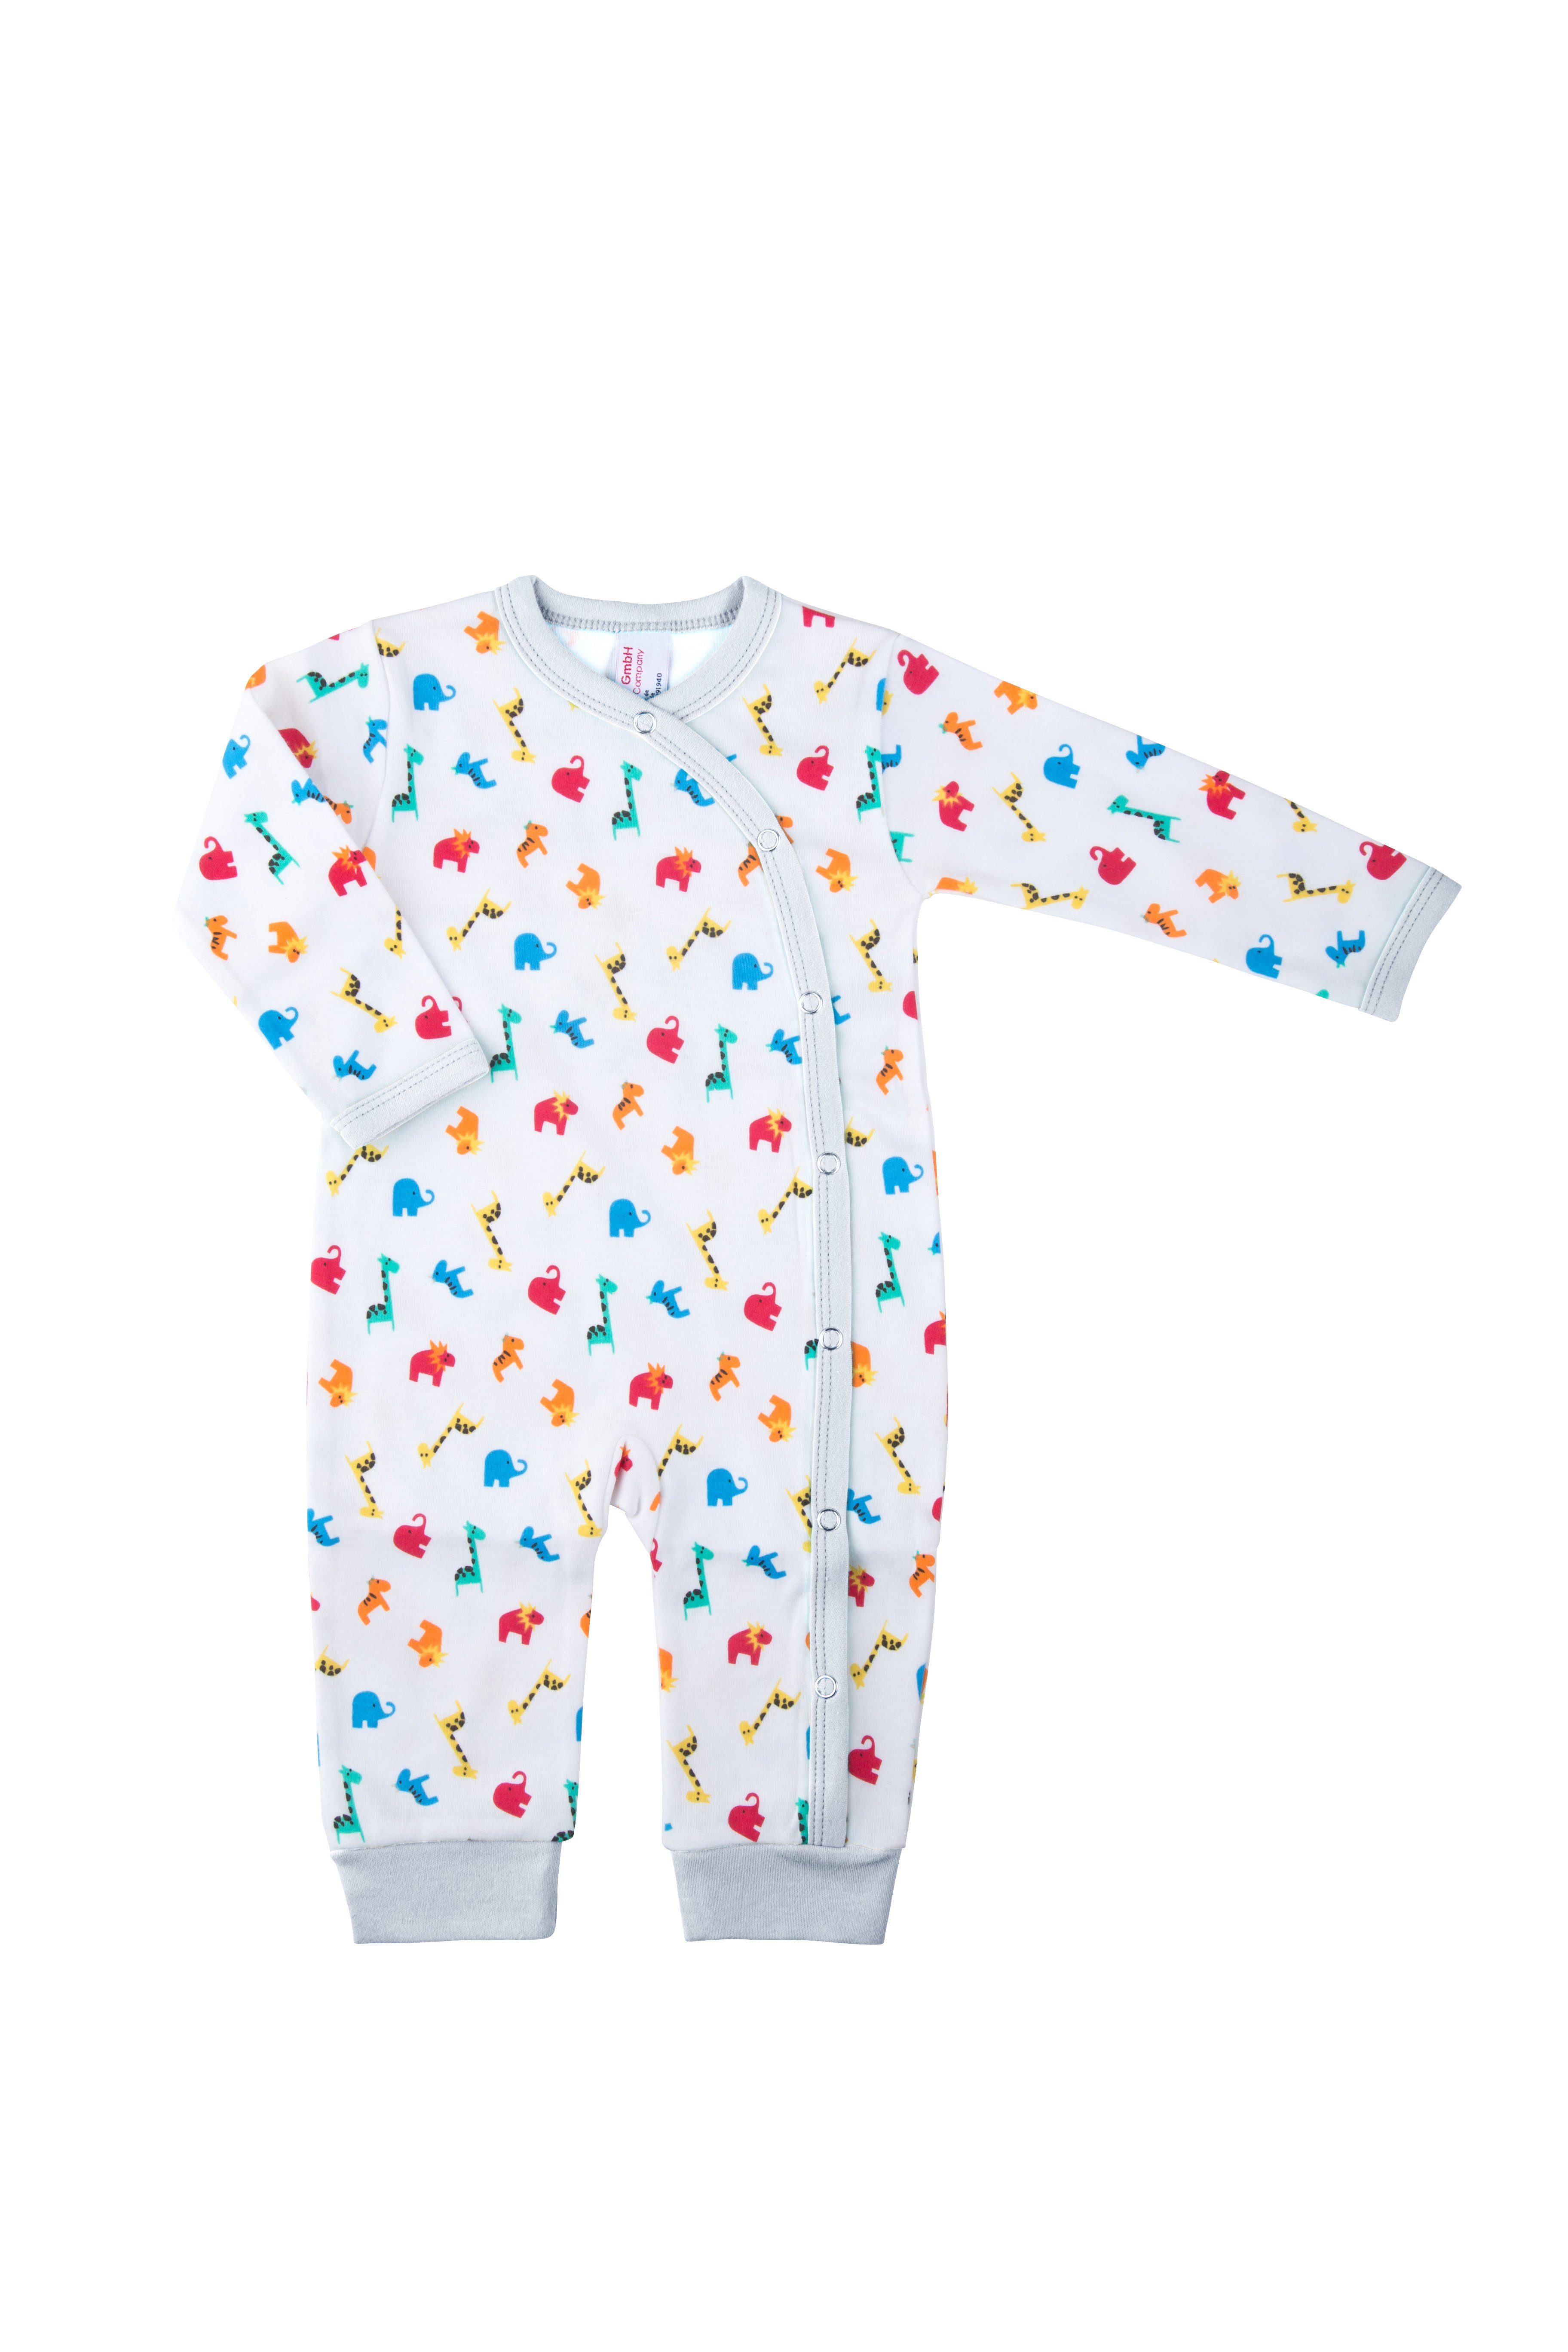 Baby Schlafanzug aus Zootiere, Druckknöpfe Jersey, Schlafoverall Weiß Clinotest